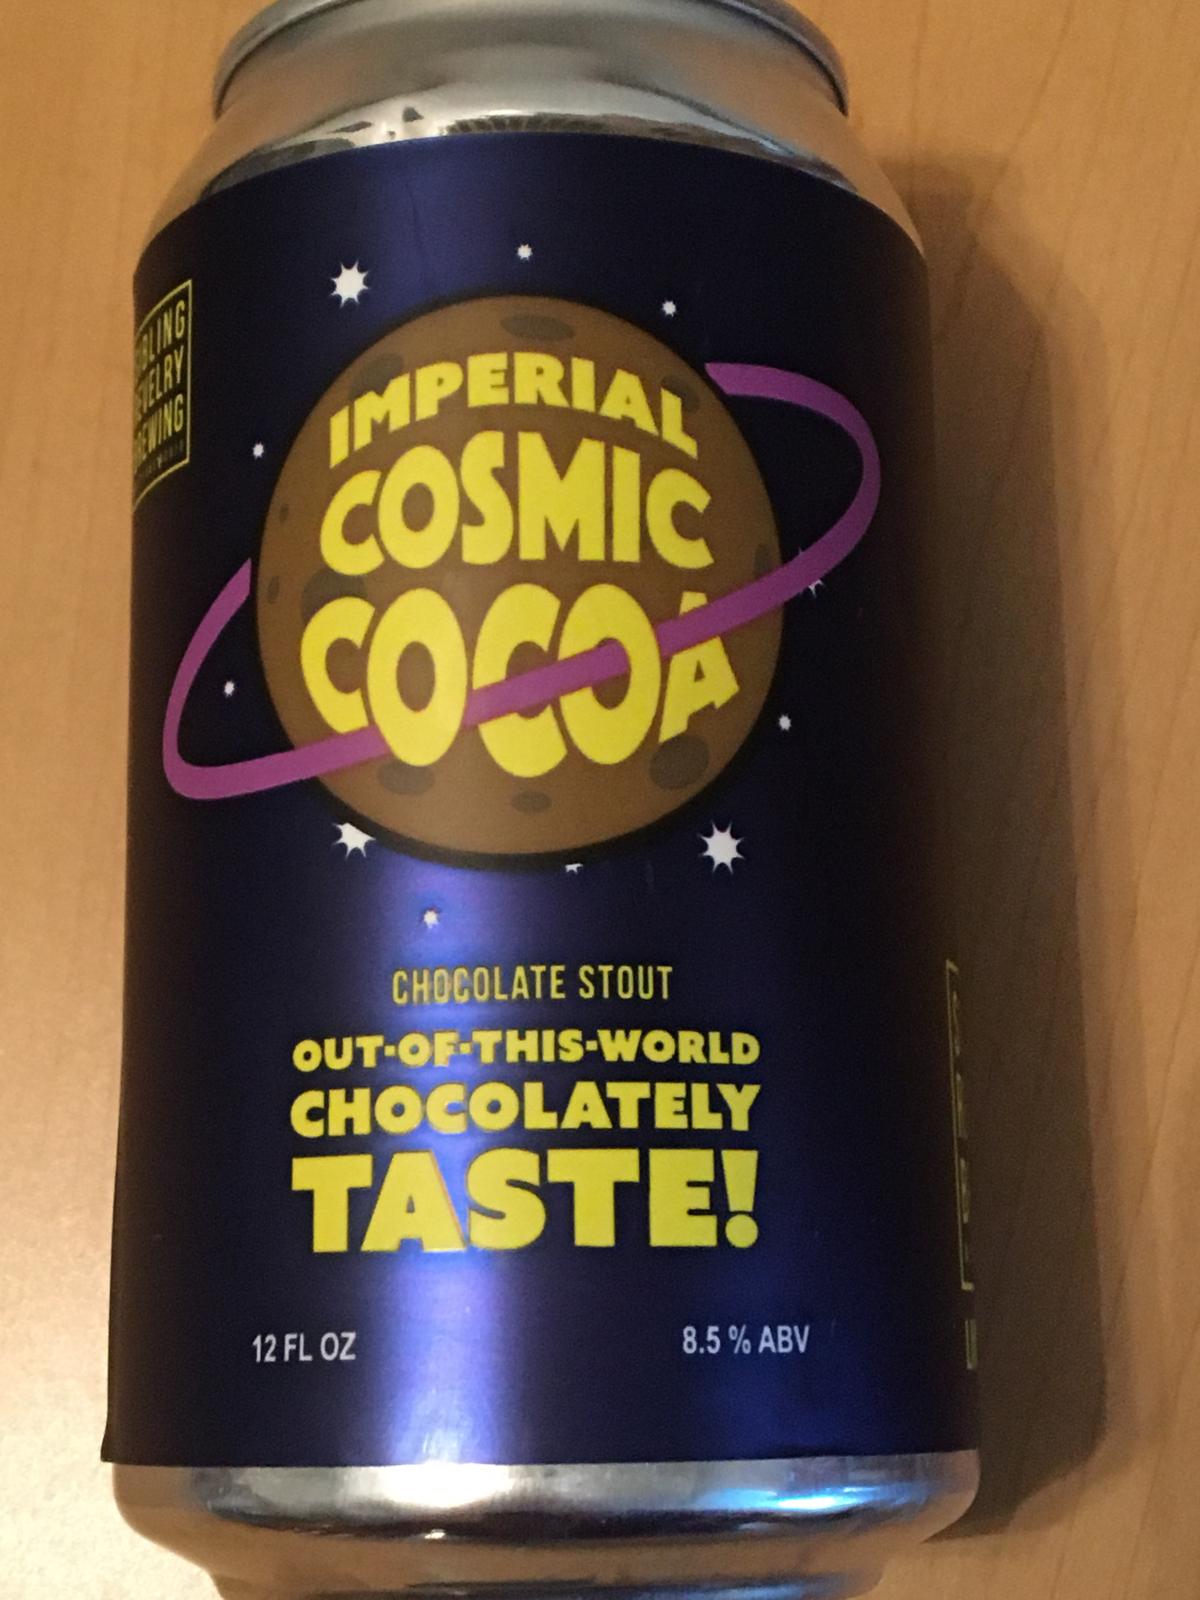 Cosmic Cocoa